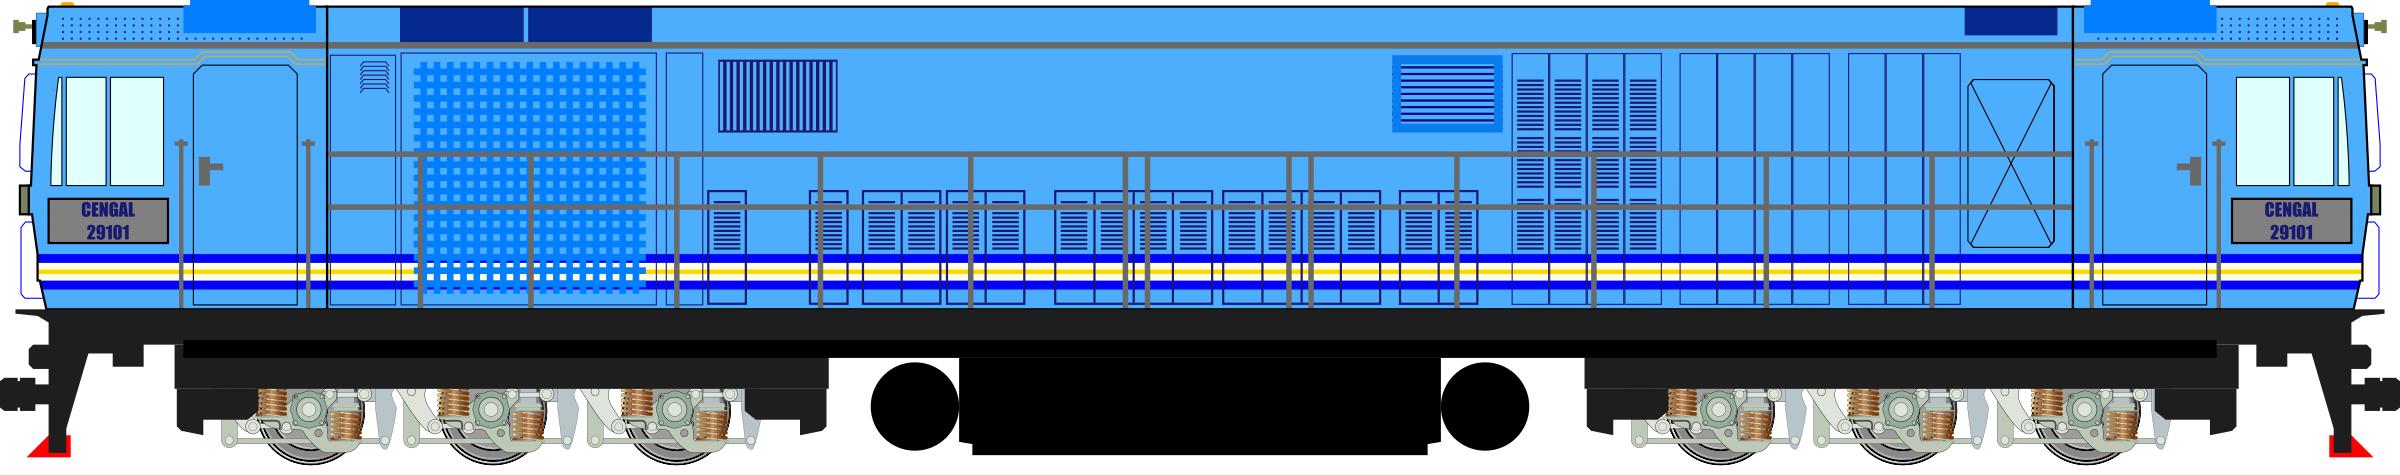 KTM Class 29 Locomotive png